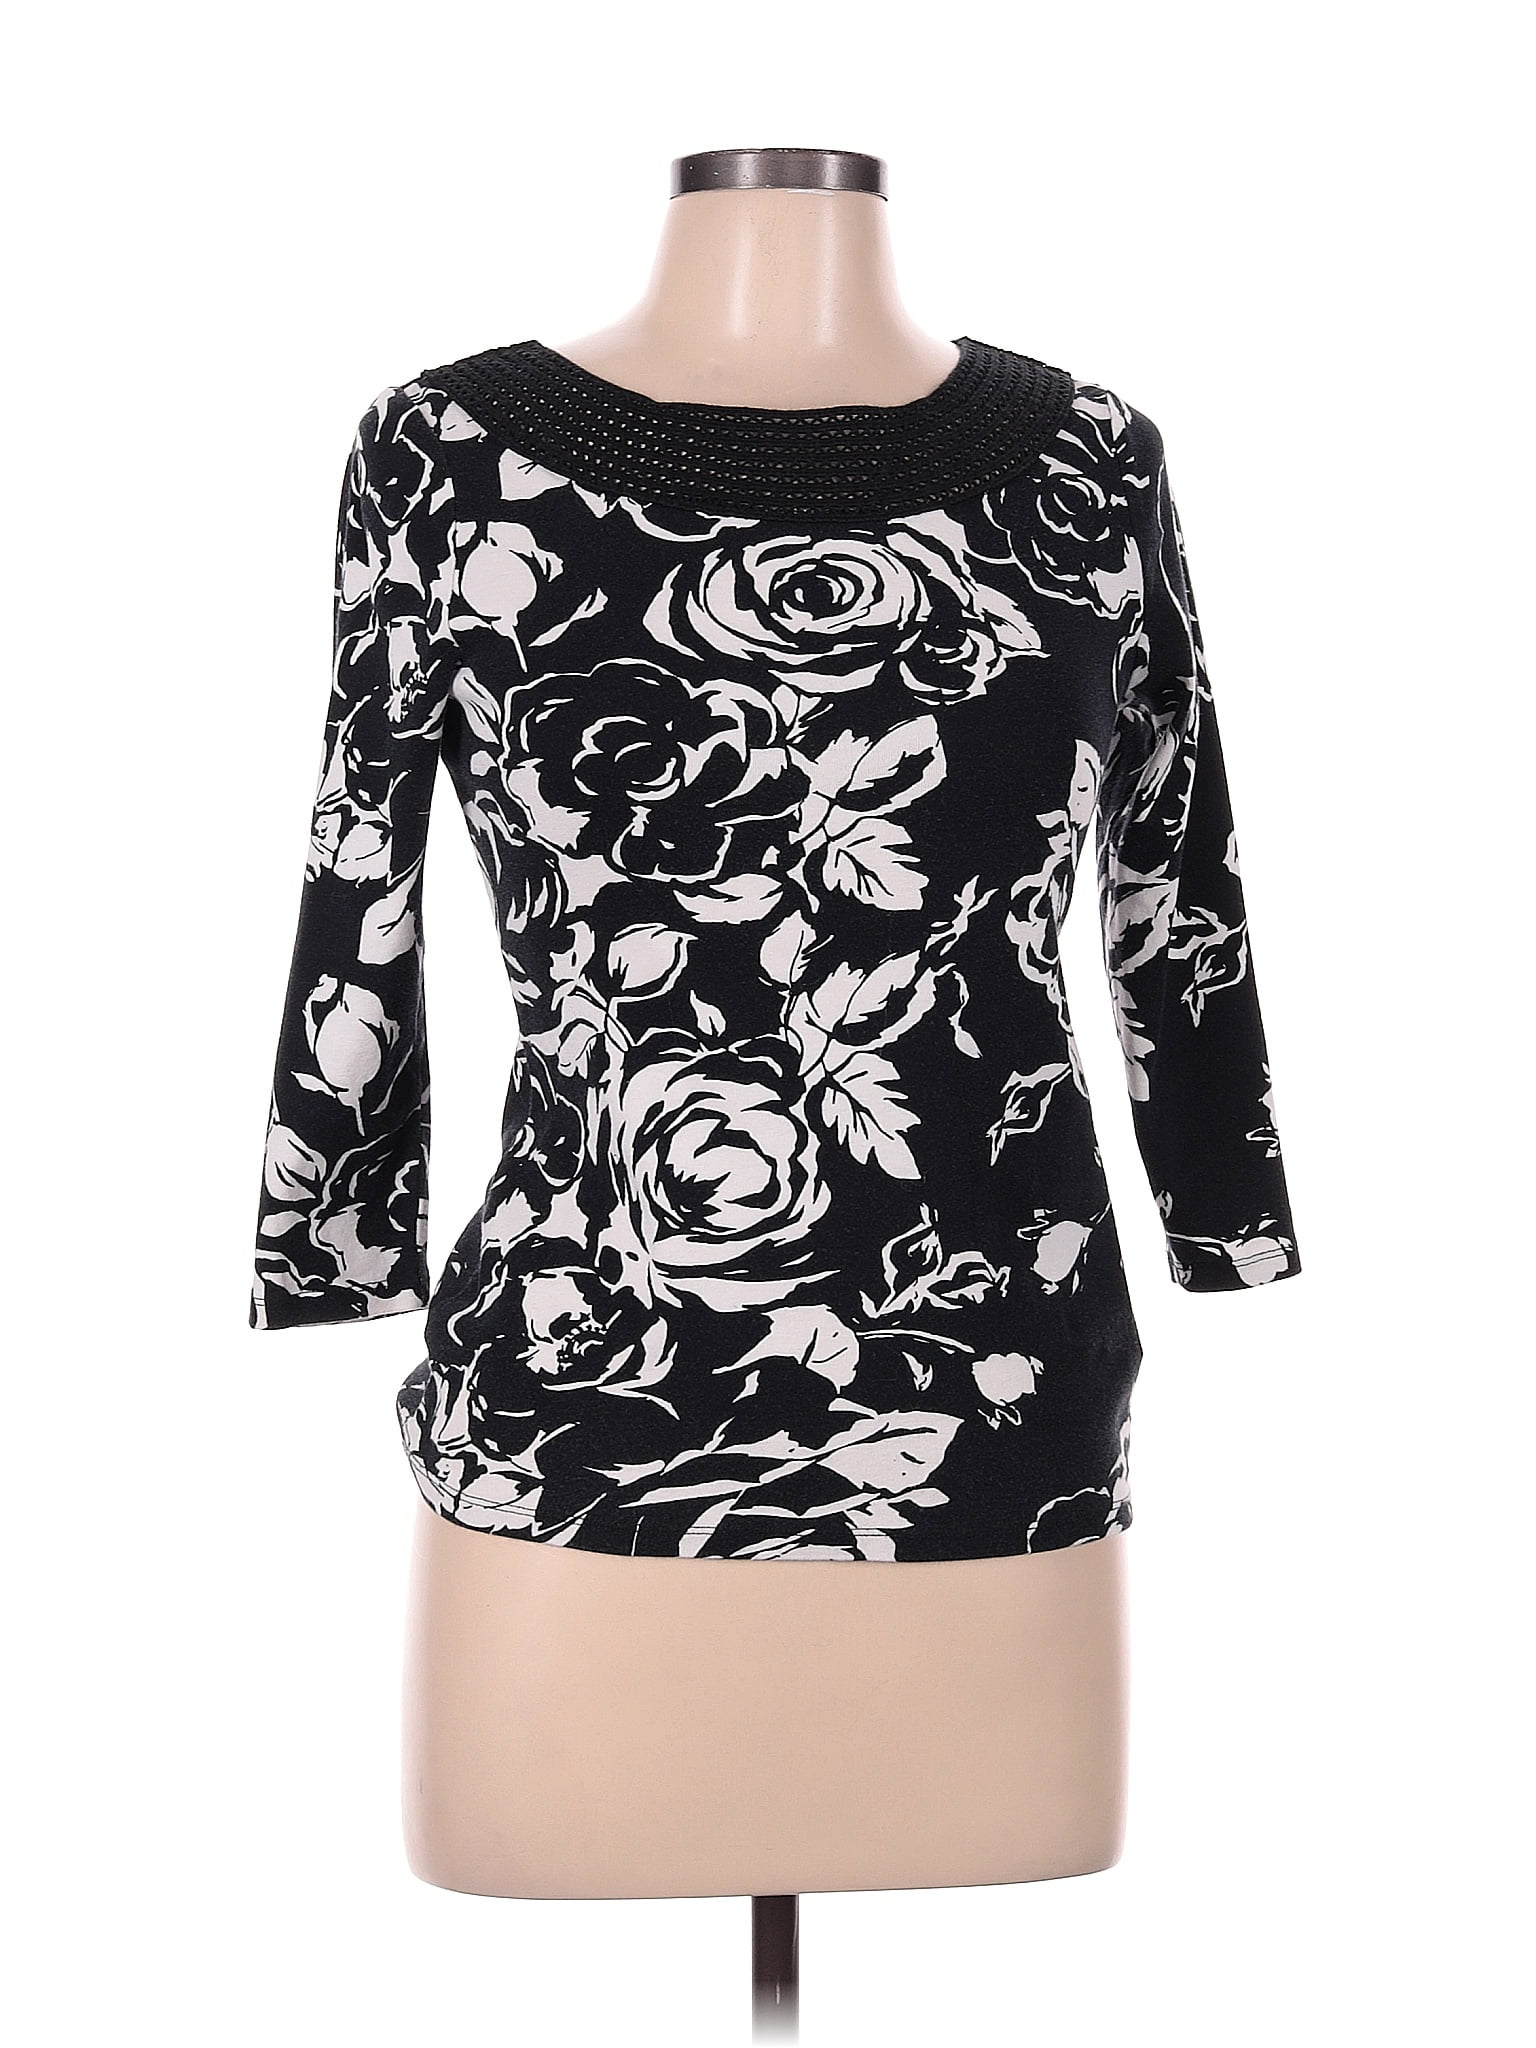 Lauren by Ralph Lauren 100% Cotton Color Block Floral Black Long Sleeve ...